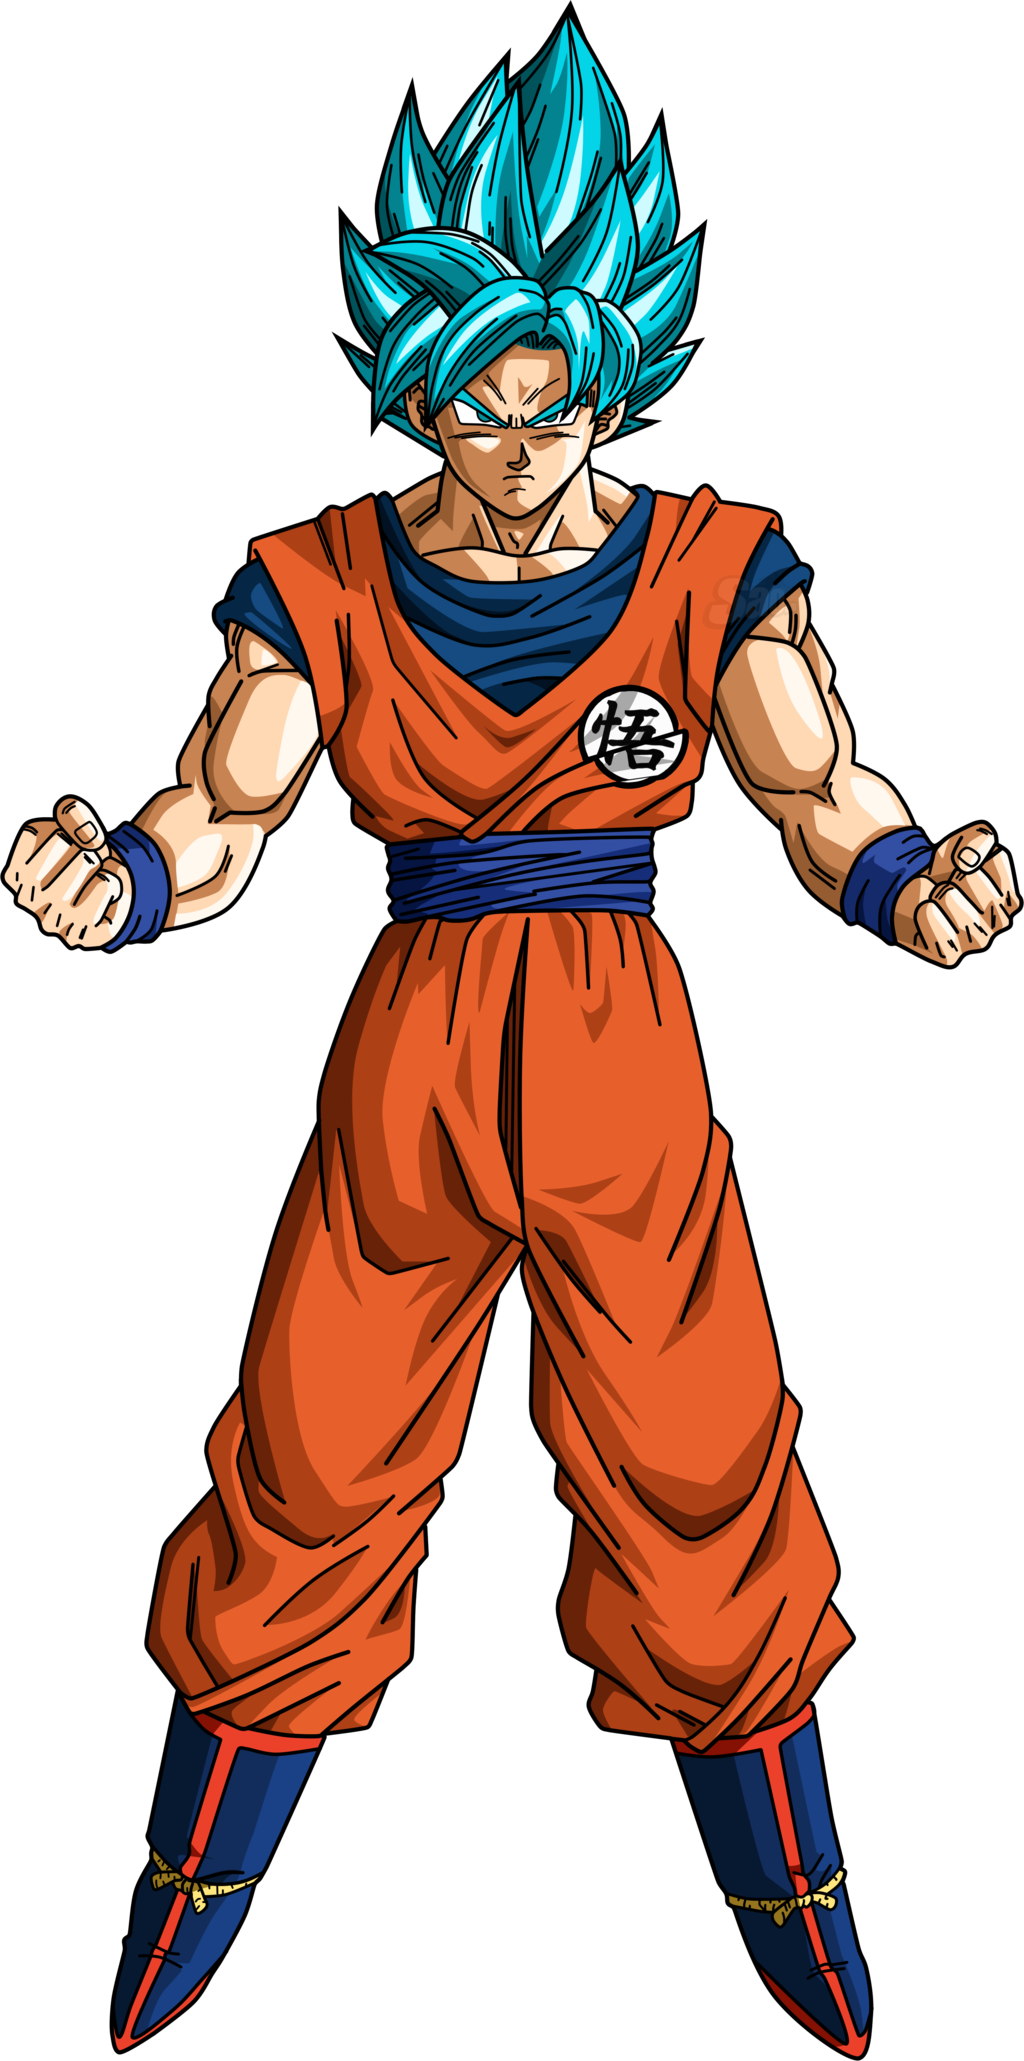 Imagen - Goku ssj blue.png | Dragon Ball Fanon Wiki ...